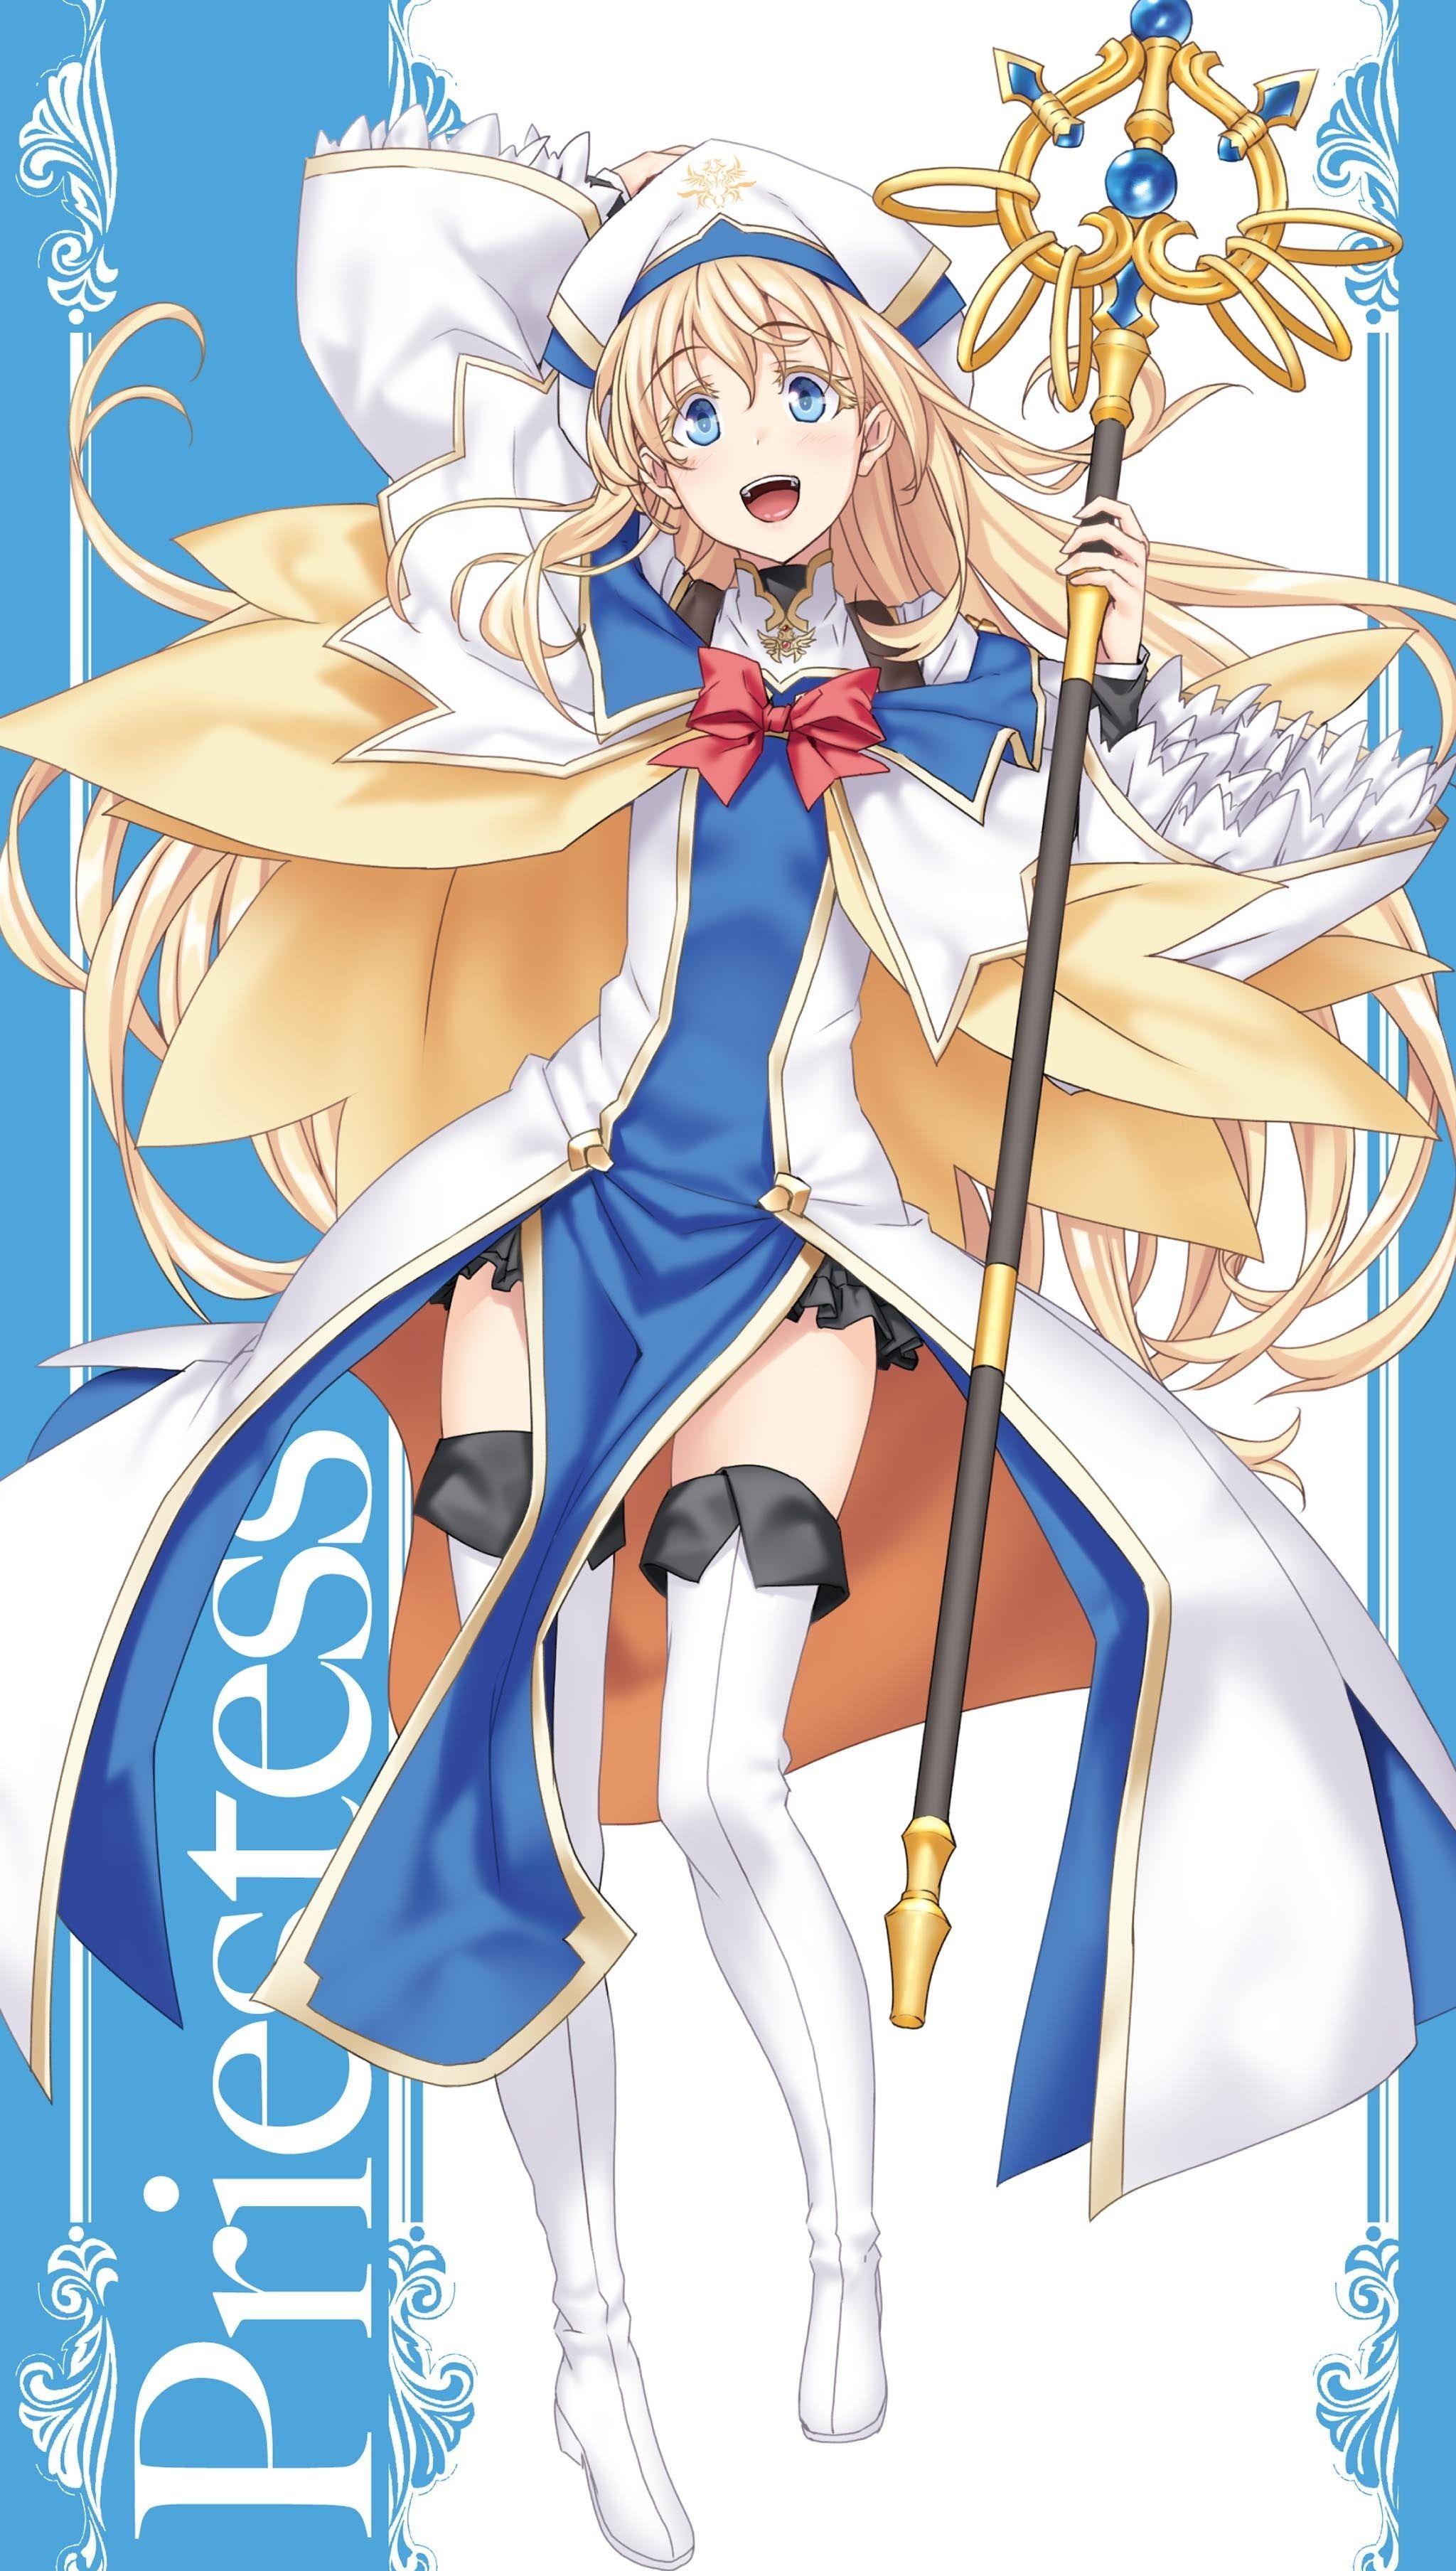 Priestess (Goblin Slayer) Anime Image Board